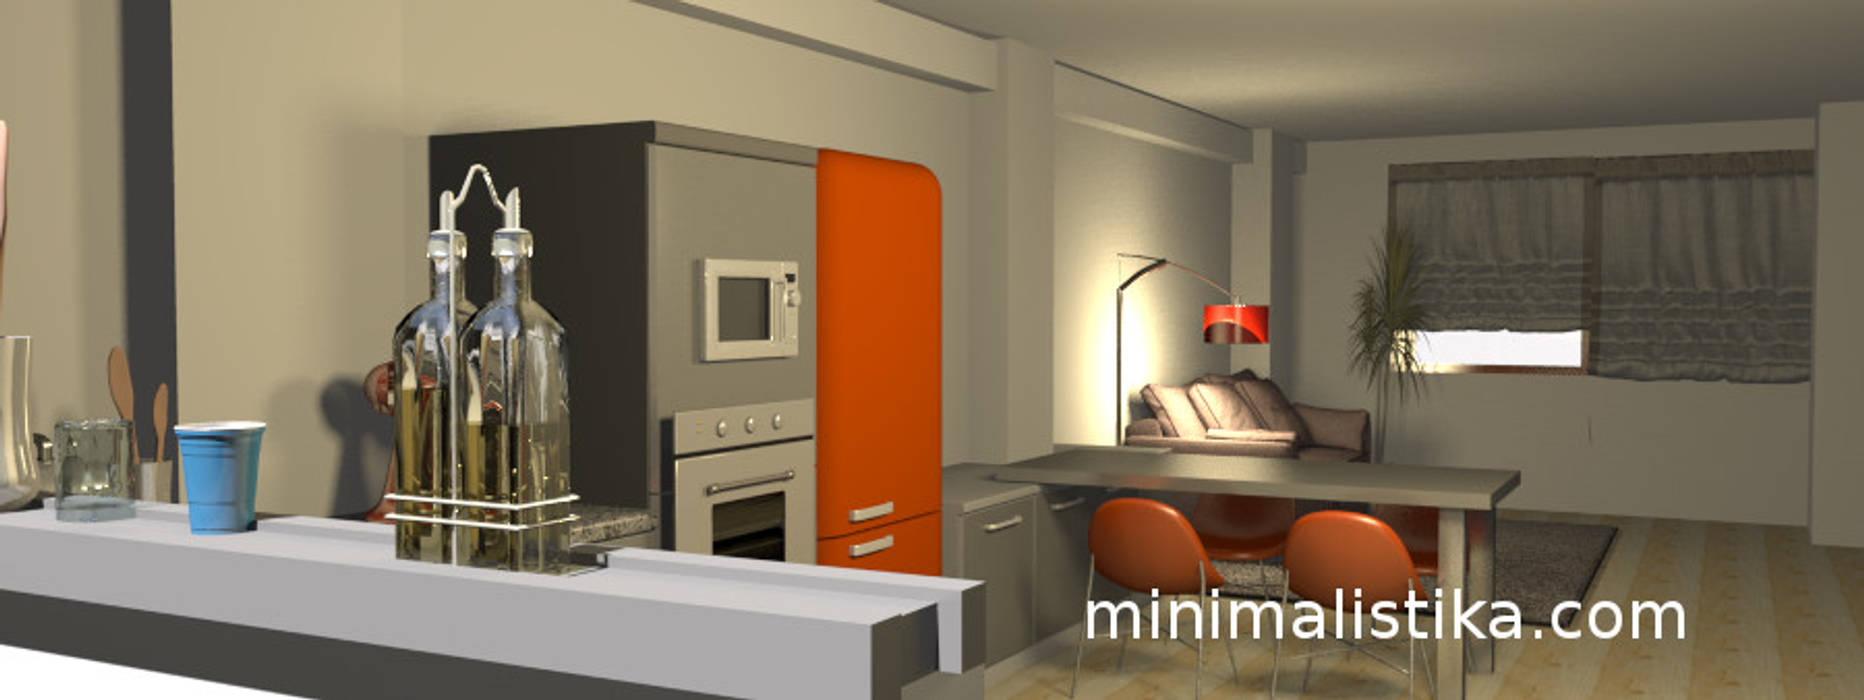 Loft Familiar Minimalistika.com Cocinas equipadas Aglomerado cocina,sala,comedor